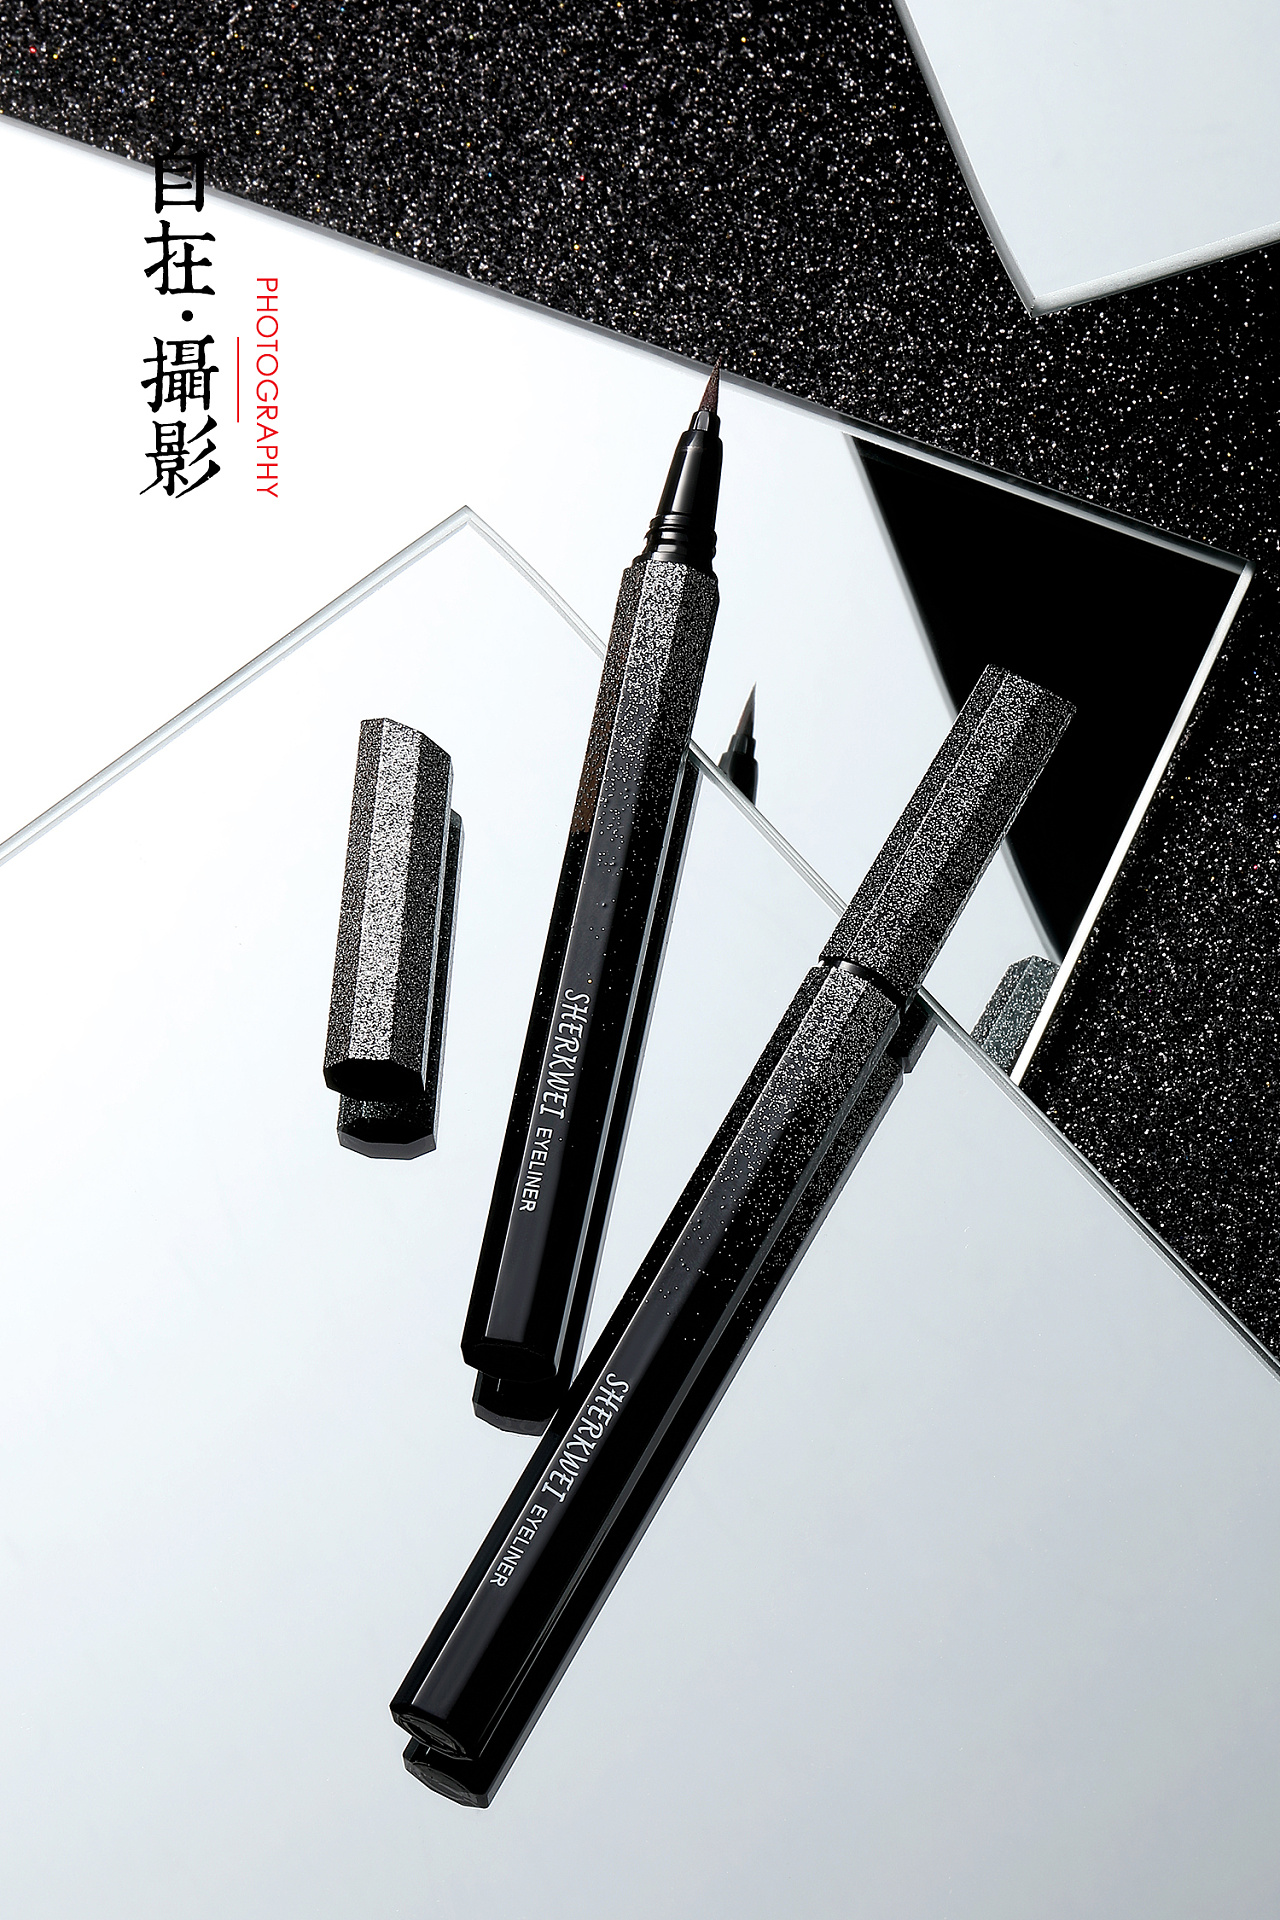 日本平价彩妆系列-眼线笔PART 1外观、笔尖、笔触和显色 - 知乎